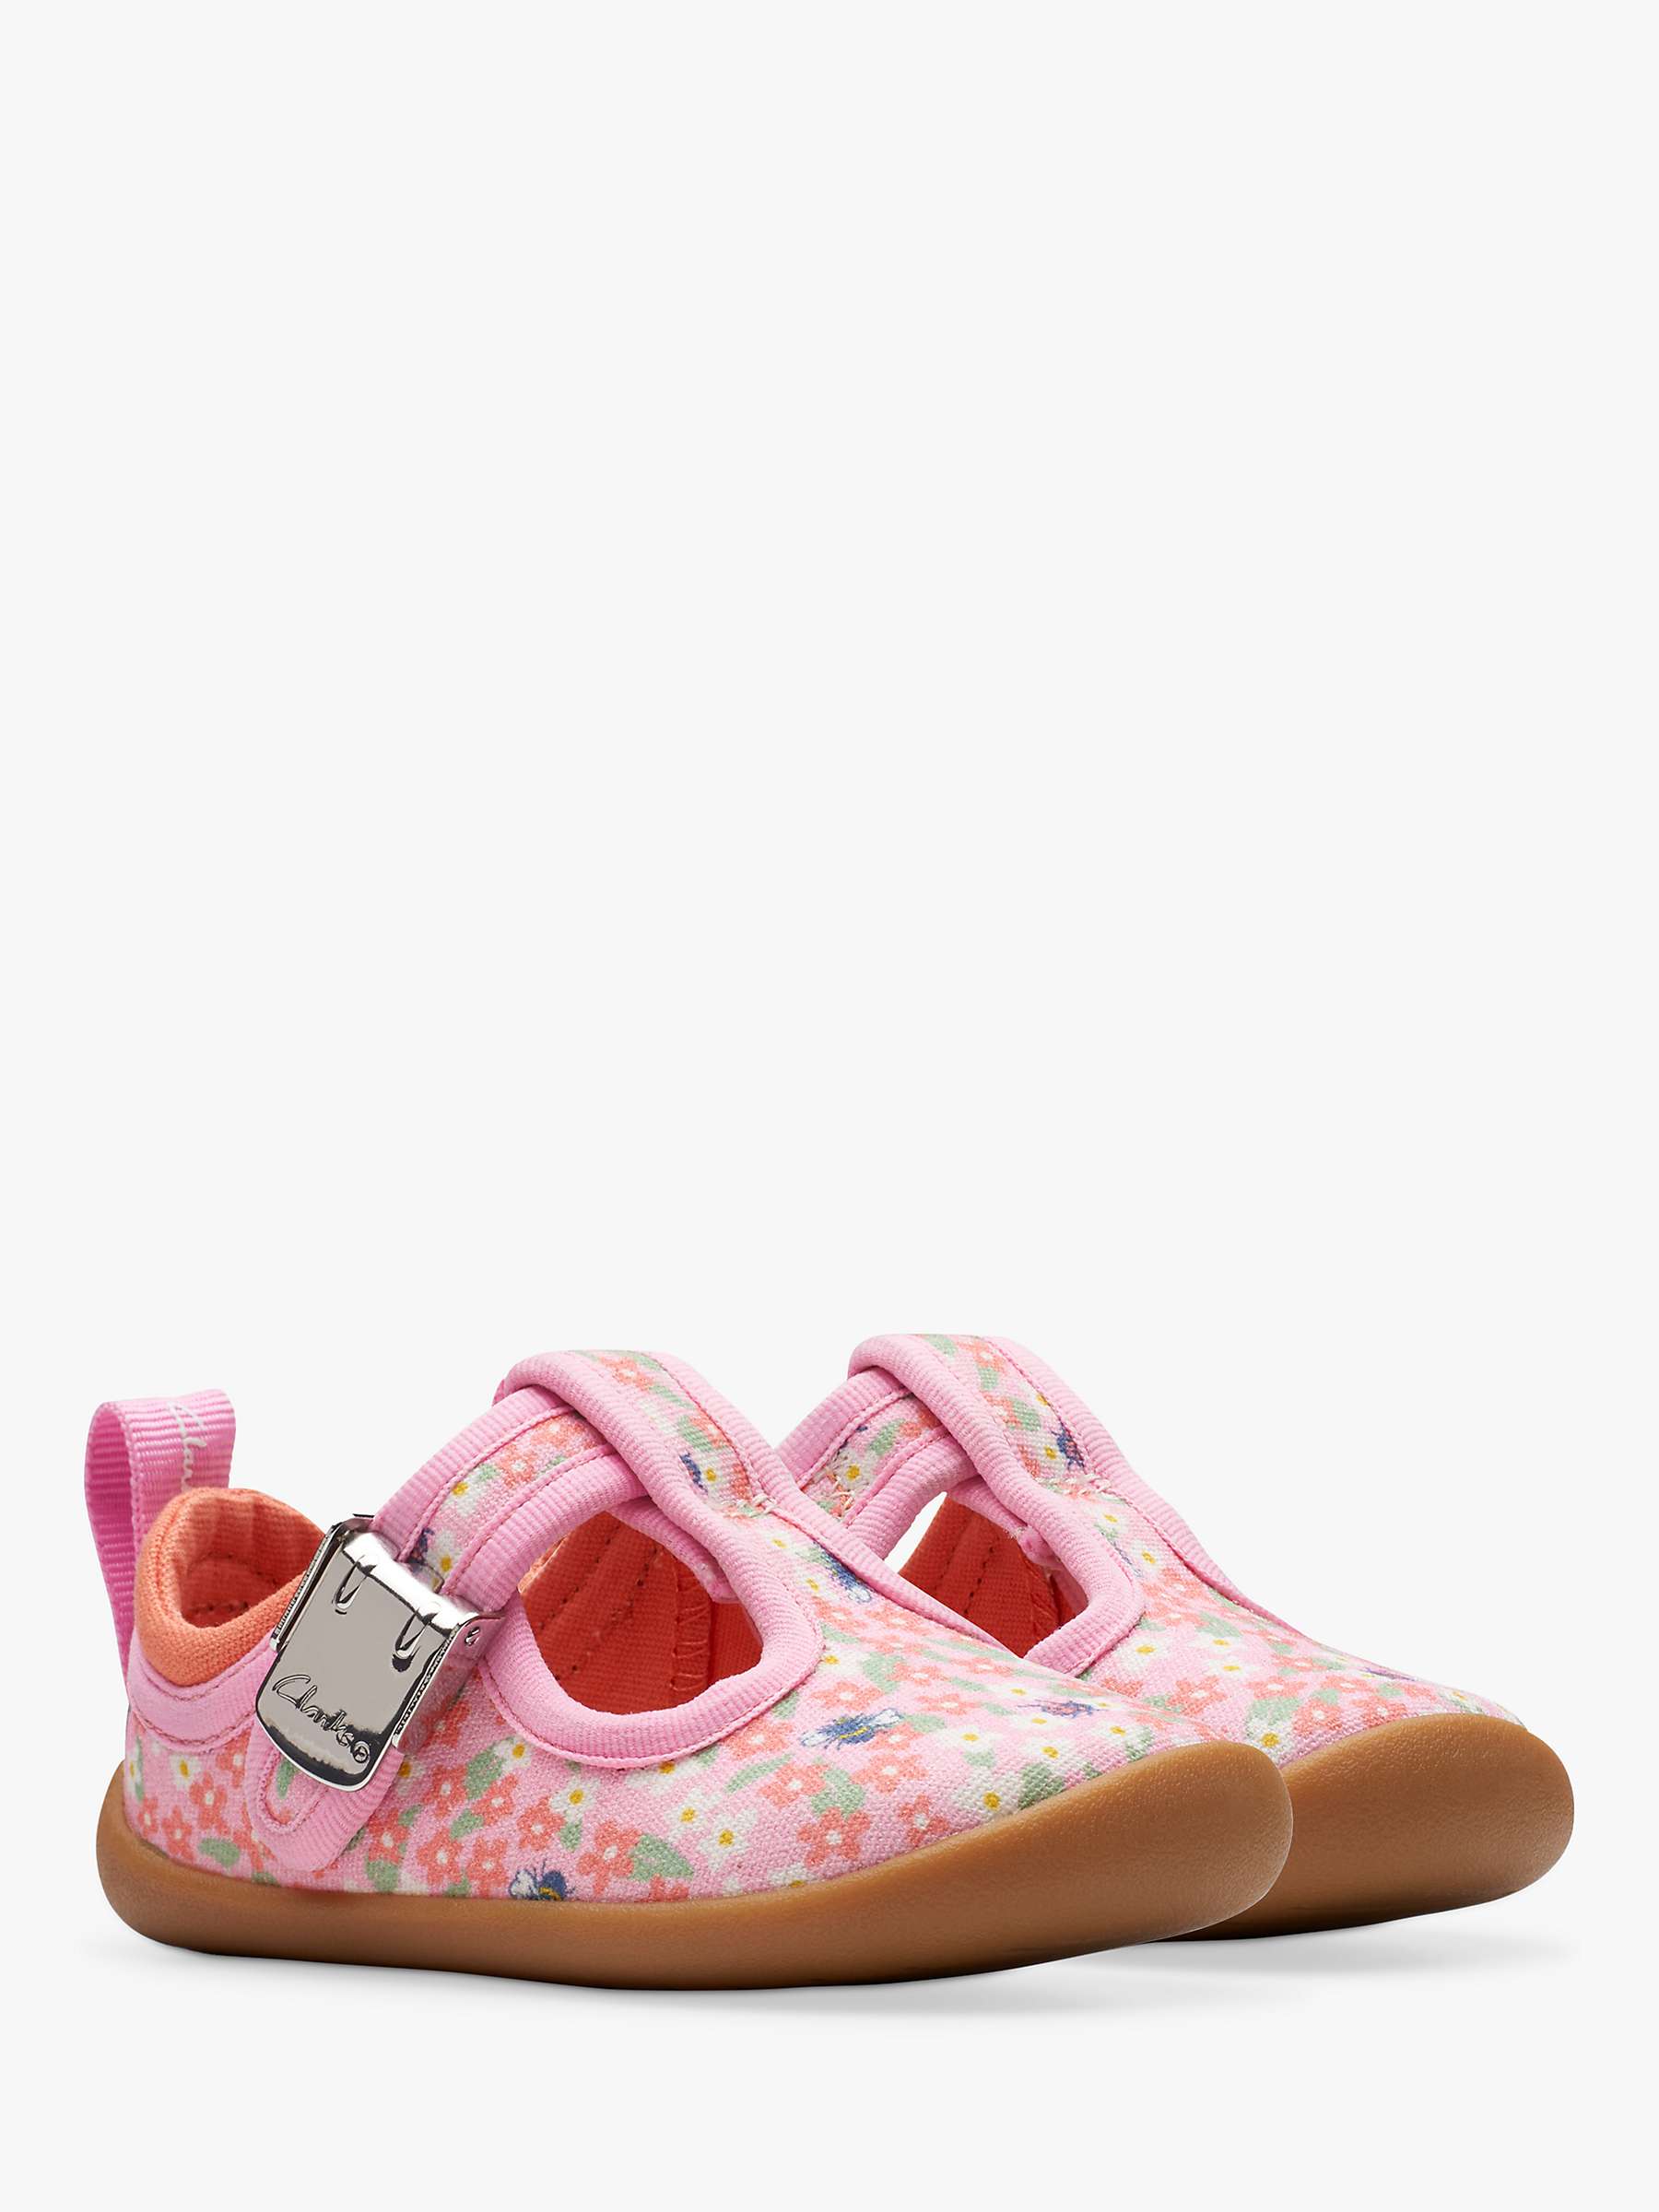 Buy Clarks Baby Roamer Bloom Floral Print T-Bar Shoes, Pink Online at johnlewis.com